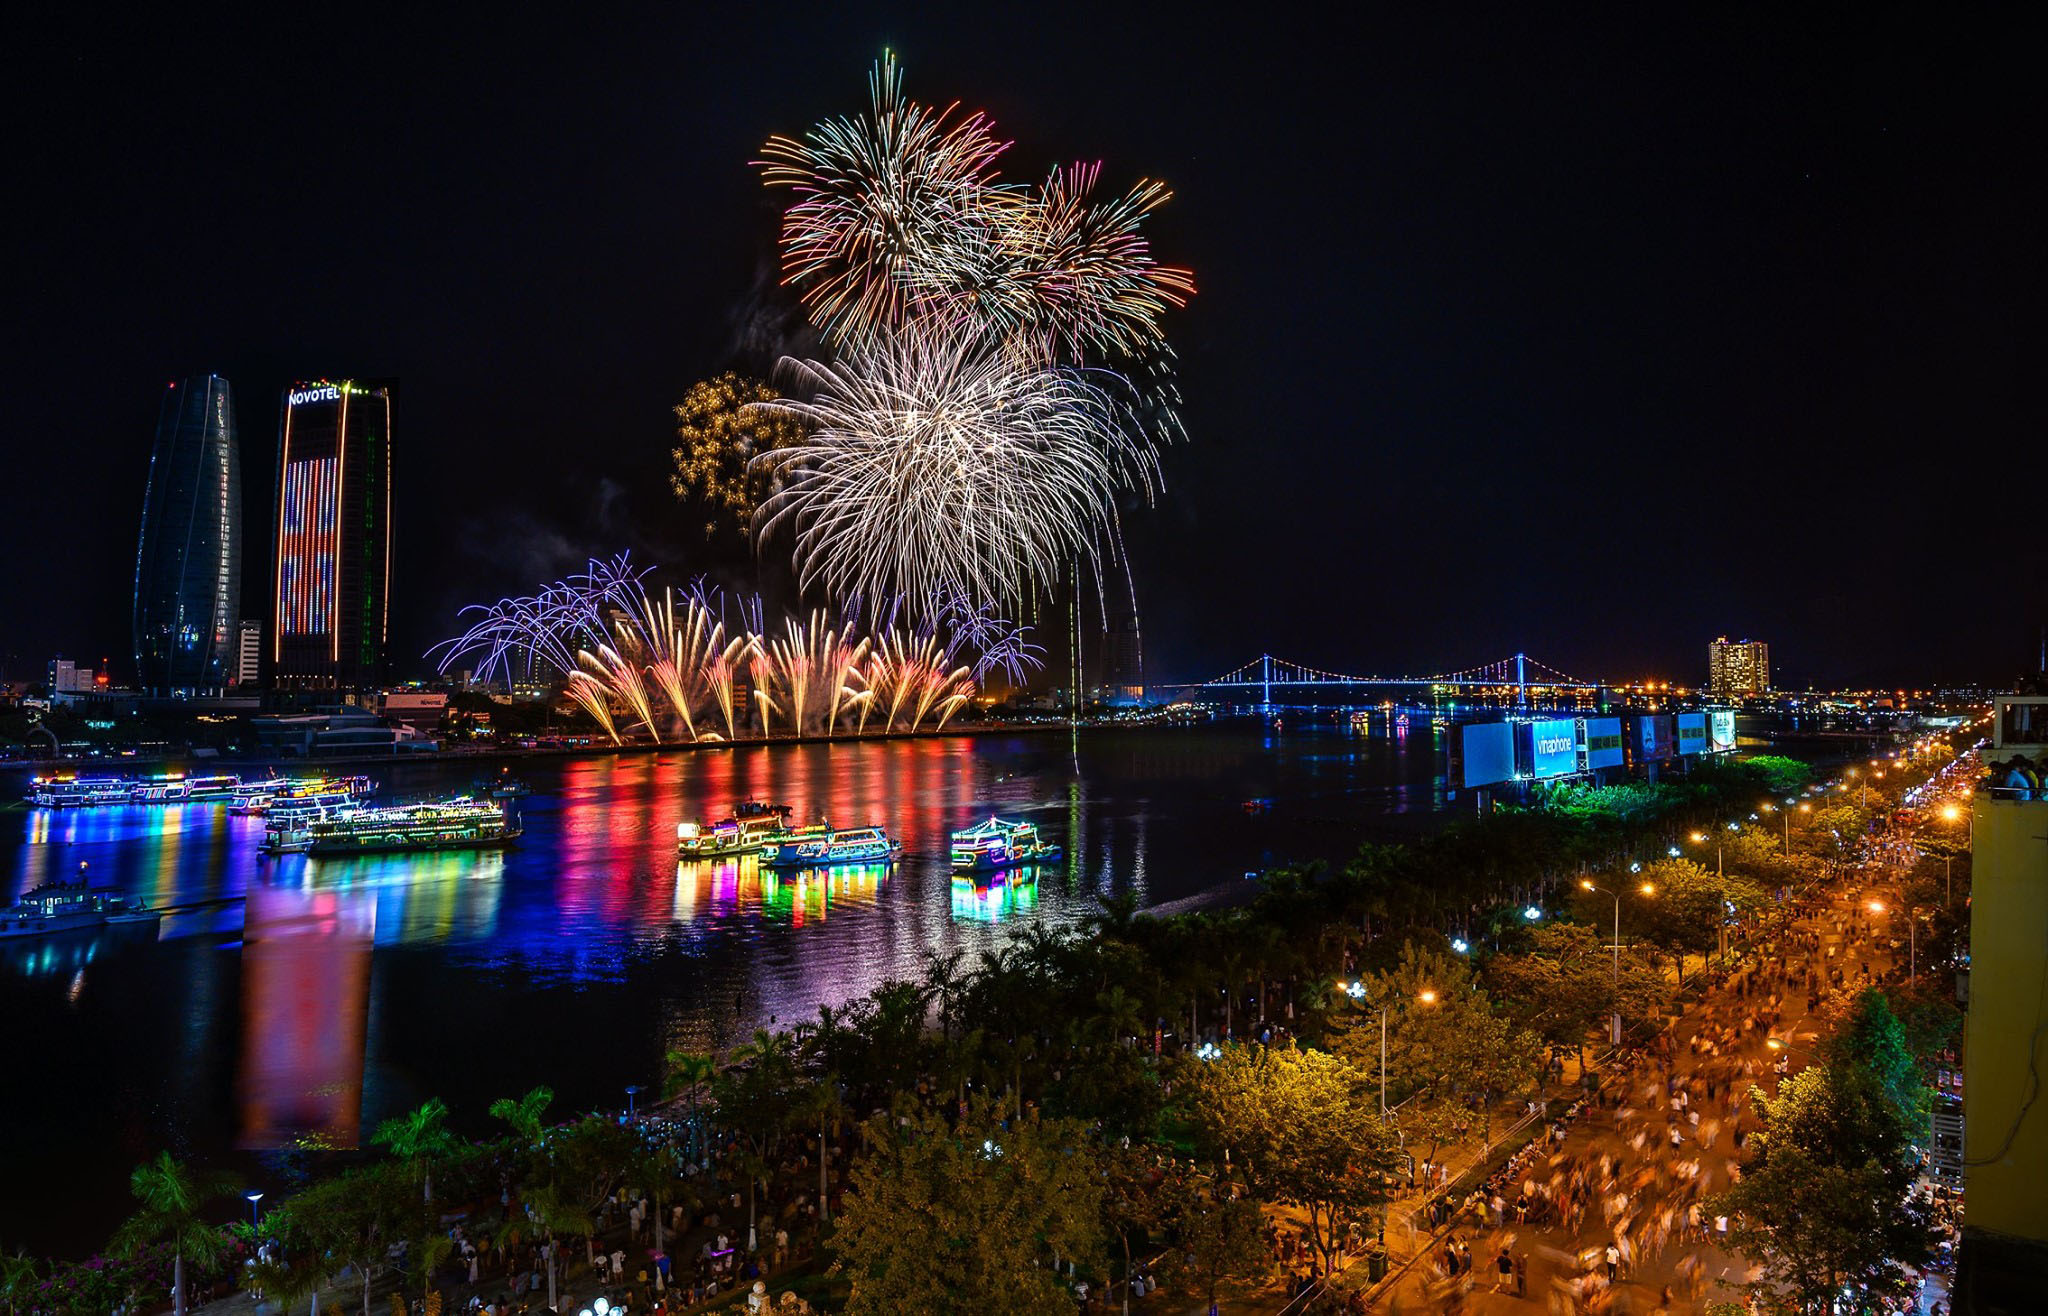  Địa điểm diễn ra cuộc thi bắn pháo hoa quốc tế Đà Nẵng 2021 sẽ diễn ra ở cảng sông Hàn